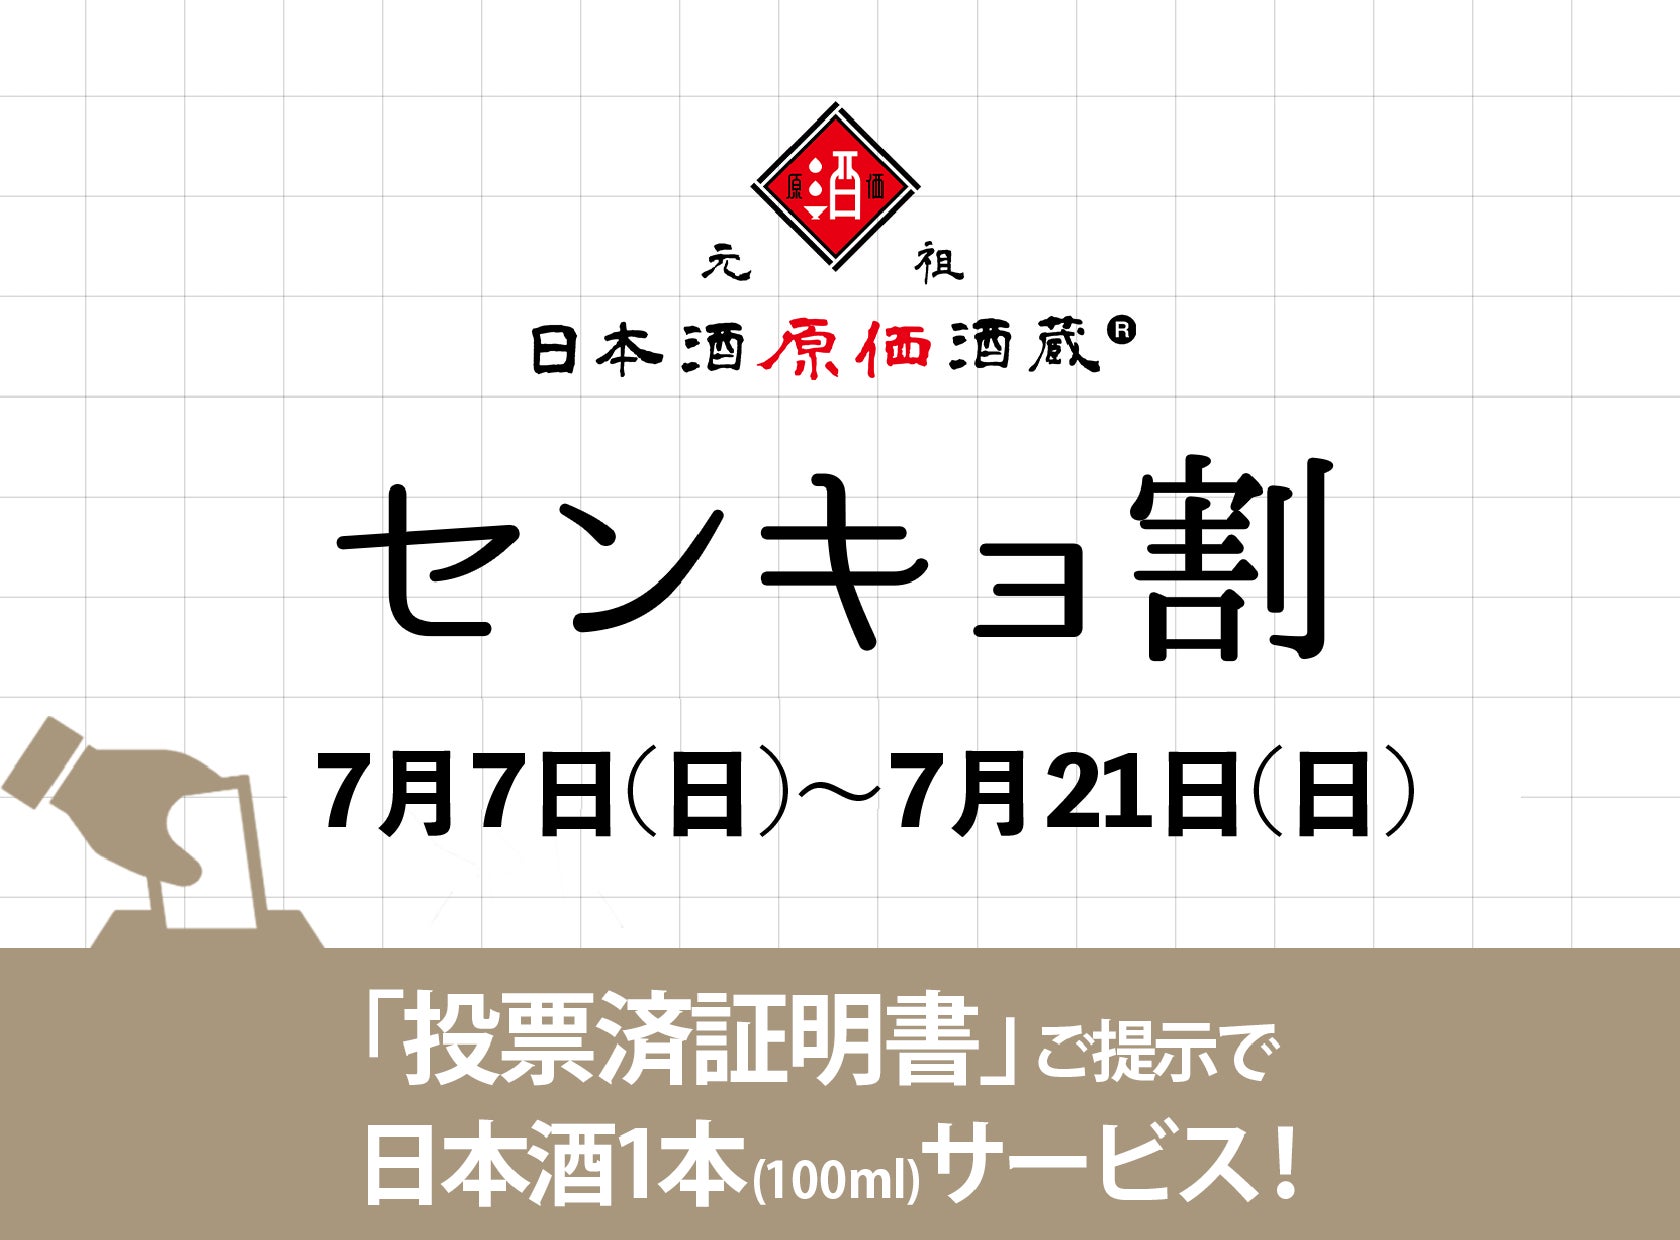 都知事選投票で日本酒1本(100ml)が無料で飲める。「センキョ割」で日本酒と投票を楽しもう！┃7月7日～7月21日に日本酒原価酒蔵、東京都内10店舗で開催